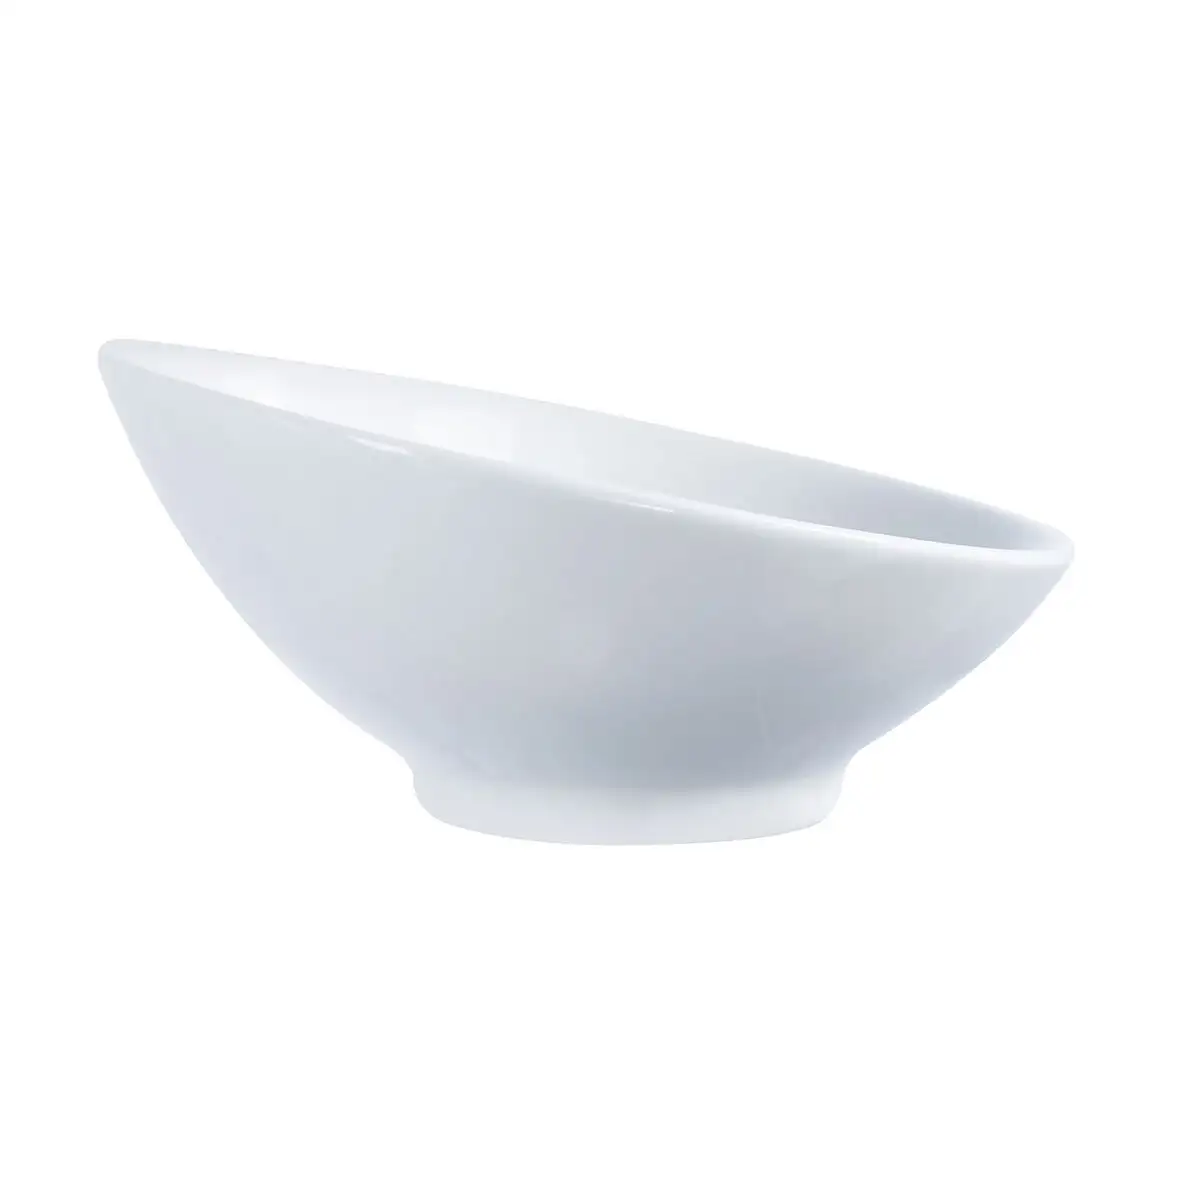 Ensemble de bols arcoroc appetizer dessert blanc ceramique 6 pieces_9079. Entrez dans DIAYTAR SENEGAL - Où Chaque Détail Compte. Explorez notre boutique en ligne pour trouver des produits de haute qualité, soigneusement choisis pour répondre à vos besoins et vos désirs.